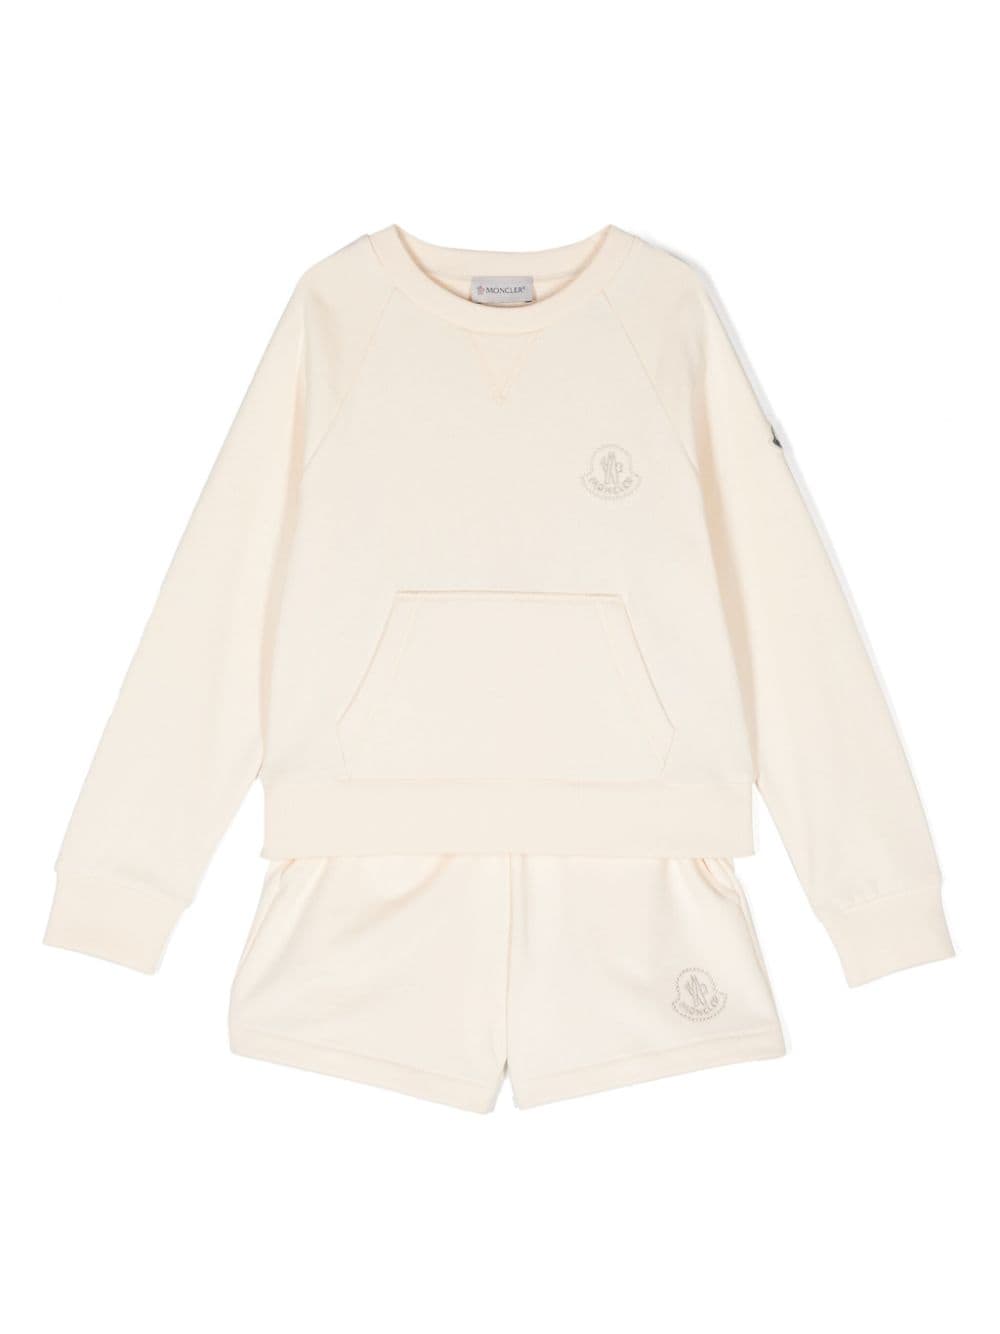 Moncler Enfant logo-embroidered cotton shorts set - Neutrals von Moncler Enfant